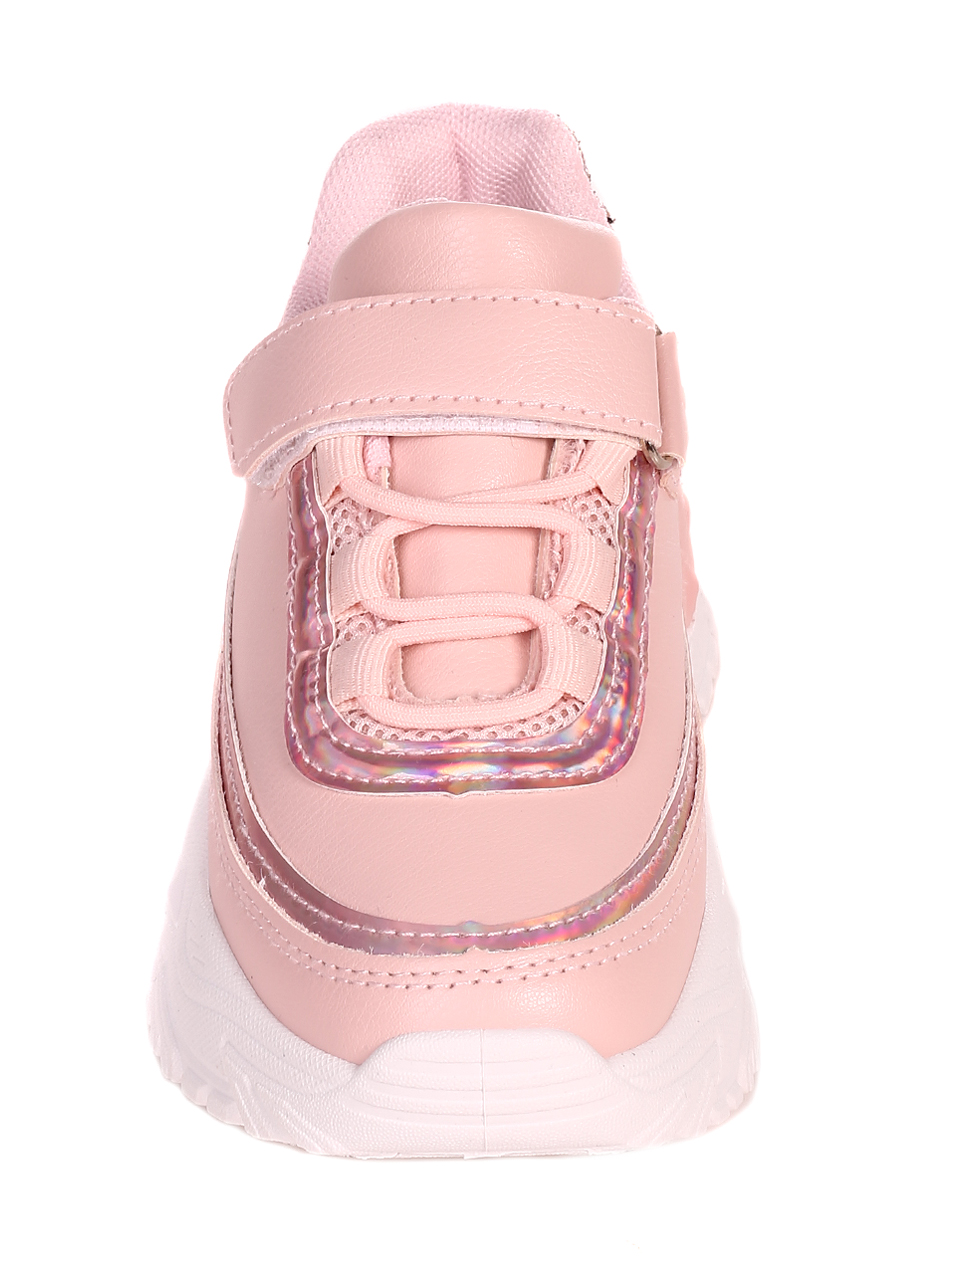 Ежедневни детски обувки в розово 18U-22599 pink